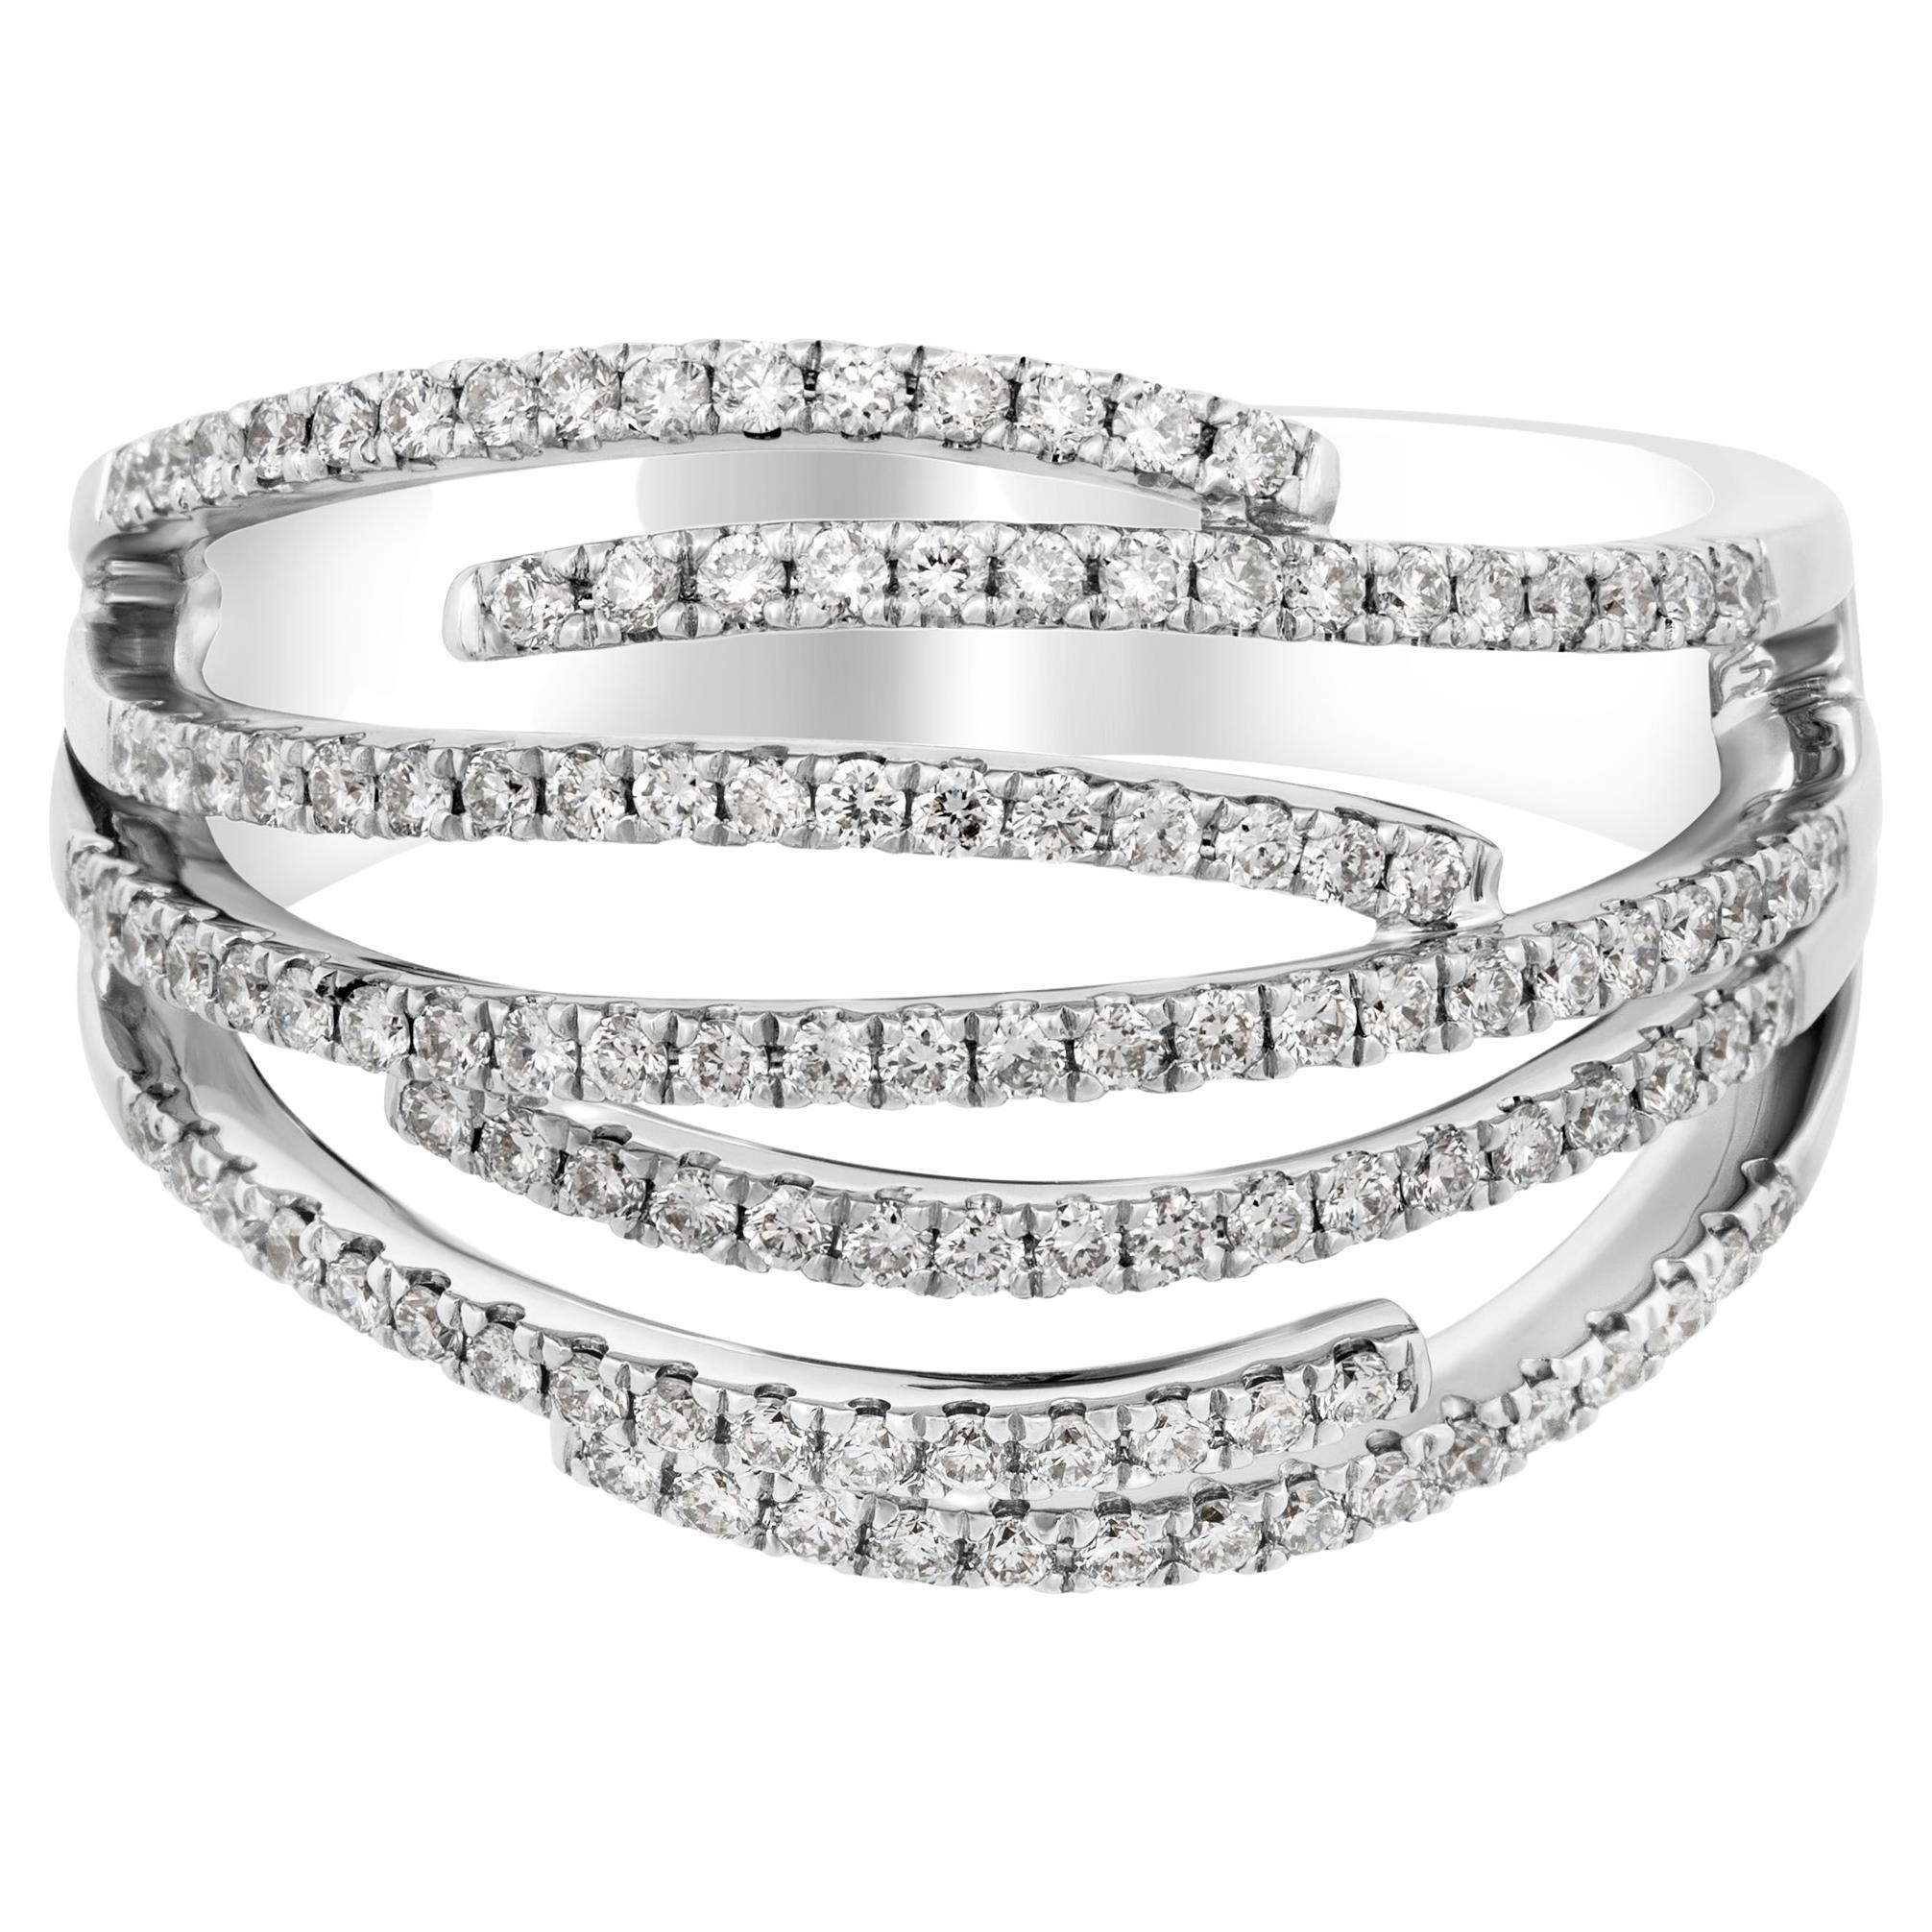 Piero Milano 18K White Gold Diamond Ring Sz 6.75